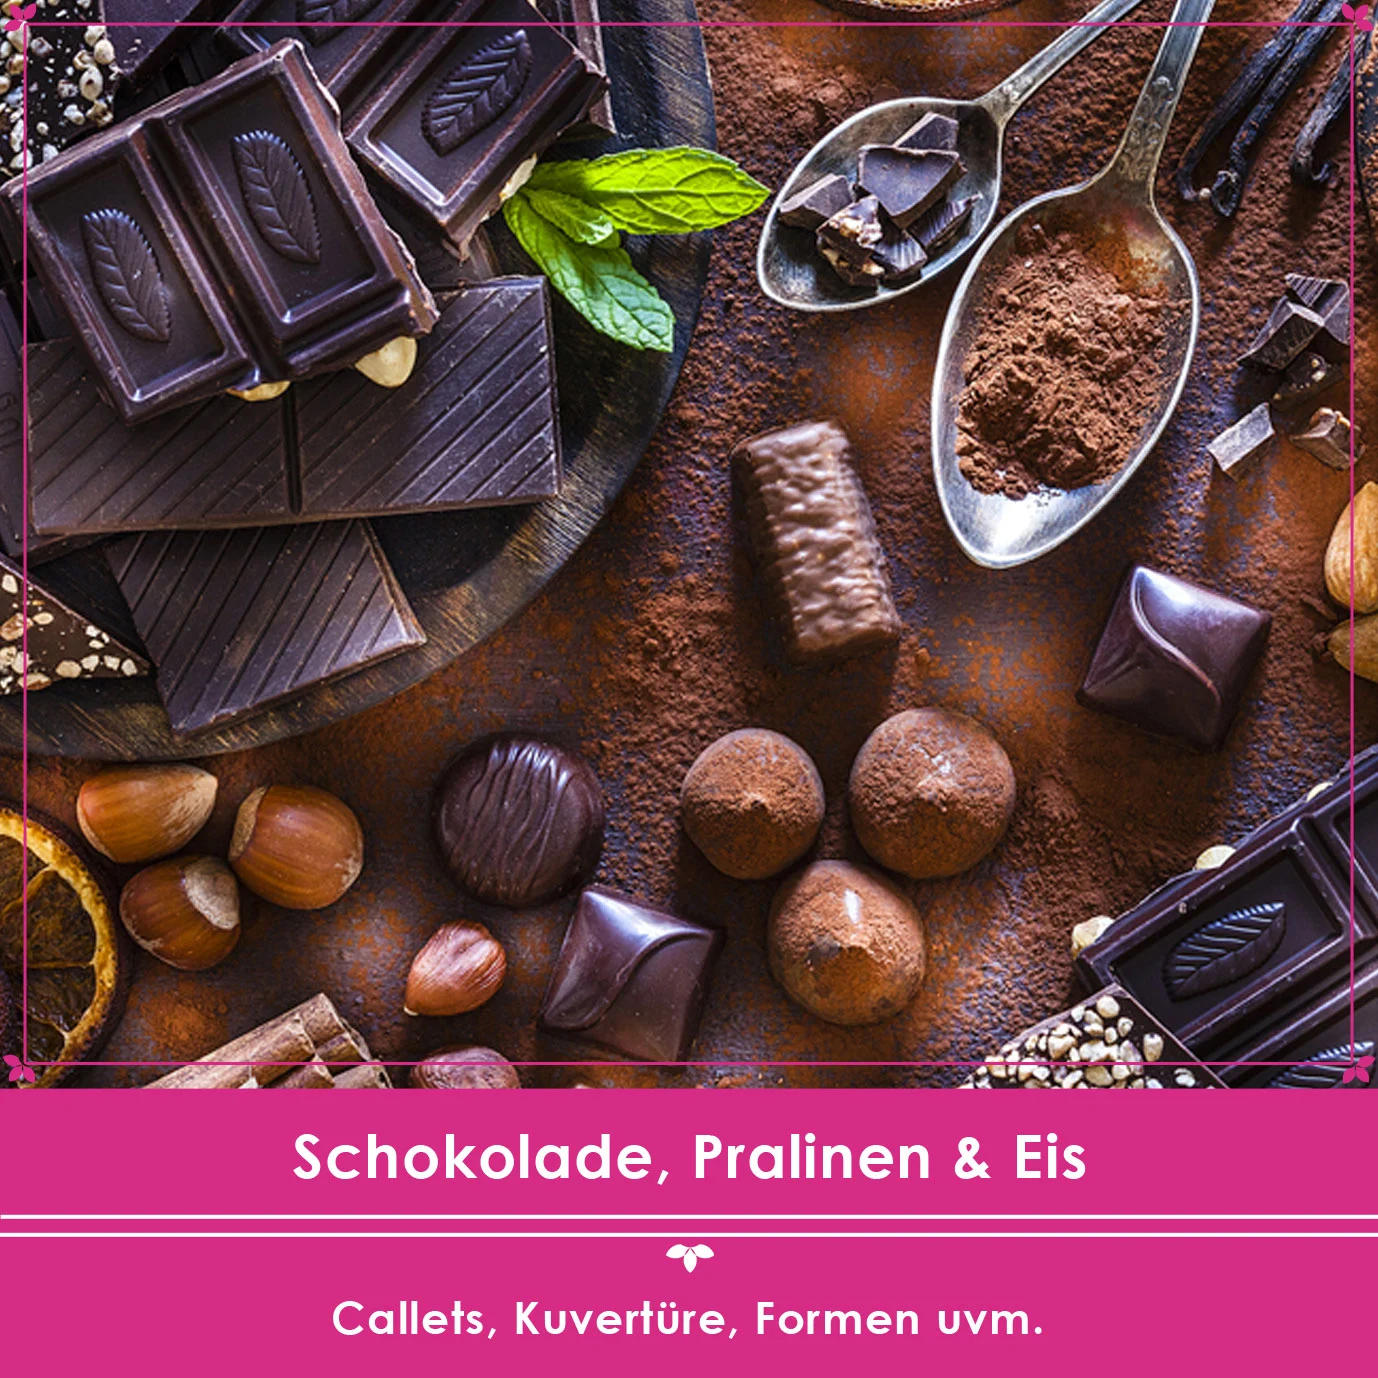 Beliebte Kategorie Schokolade Pralinen und Eis